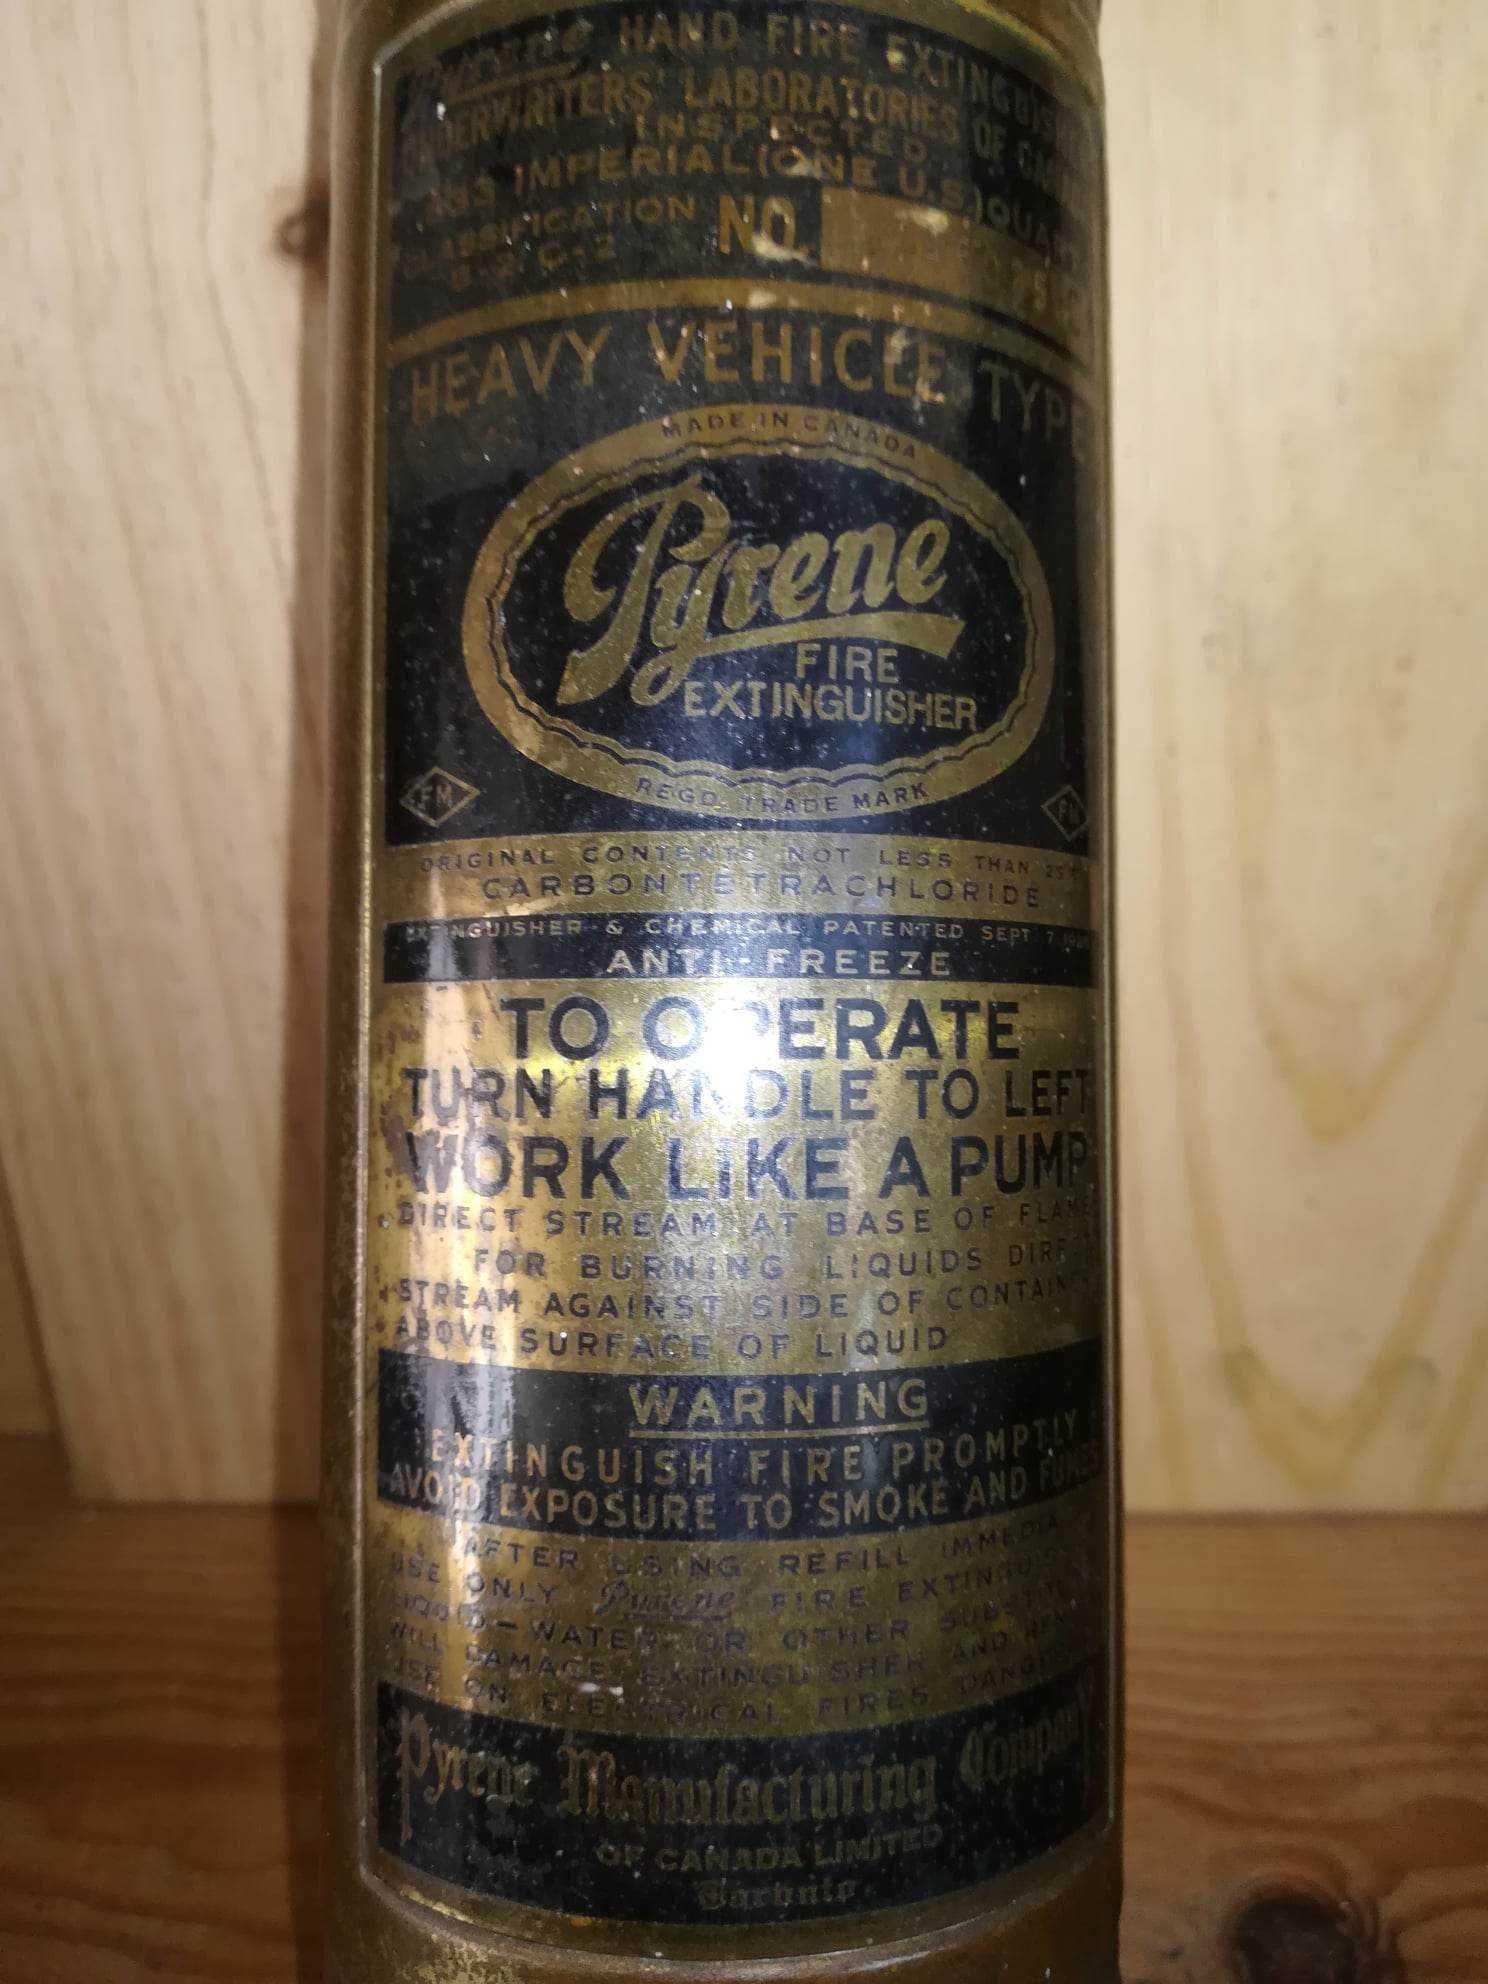 Extintor manual datado de 1914 da marca Pyrene Company Limited.